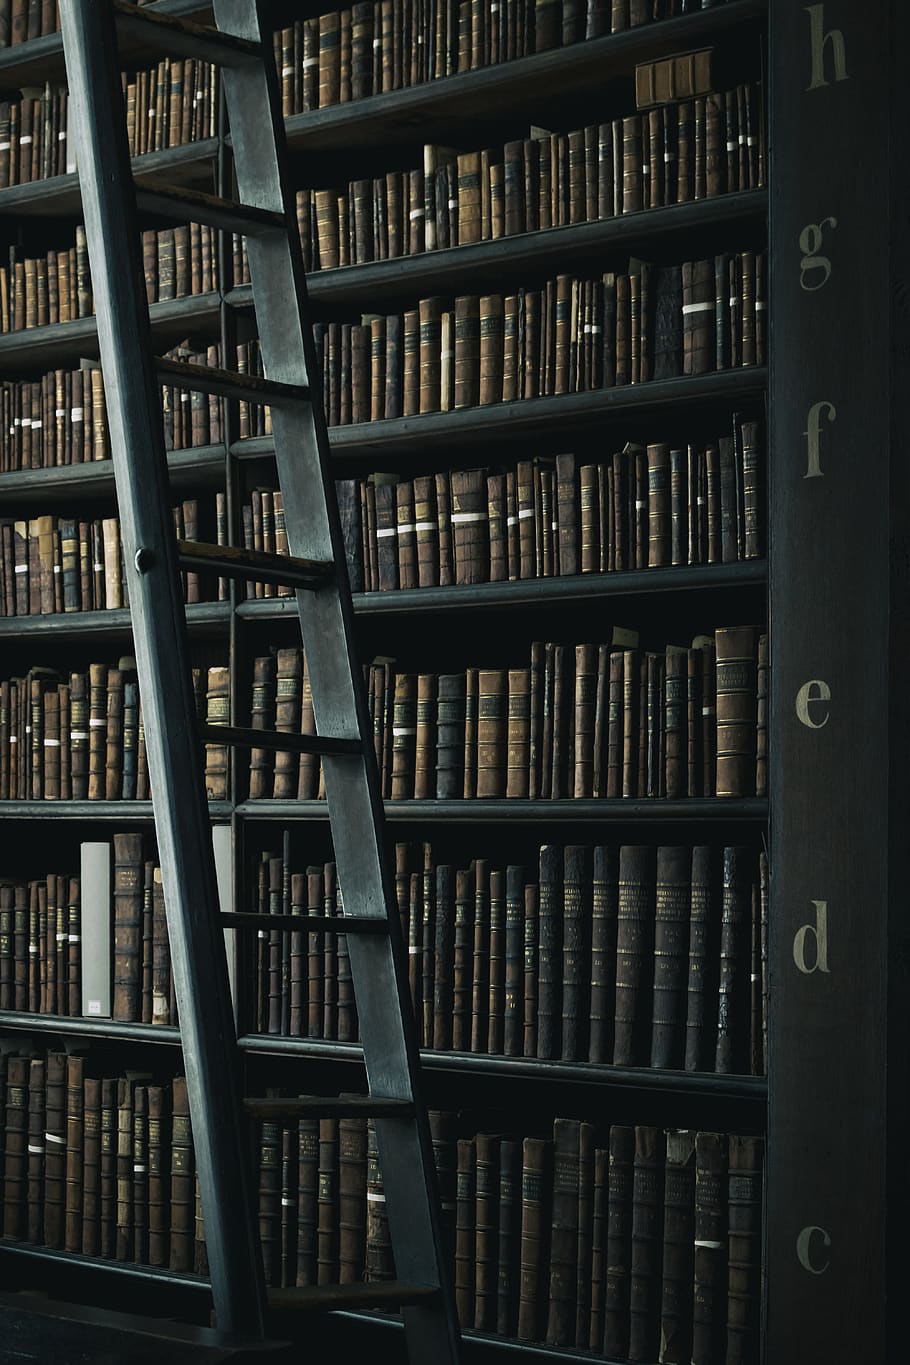 Hd Wallpaper Library Shelf Near Black Wooden Ladder Book